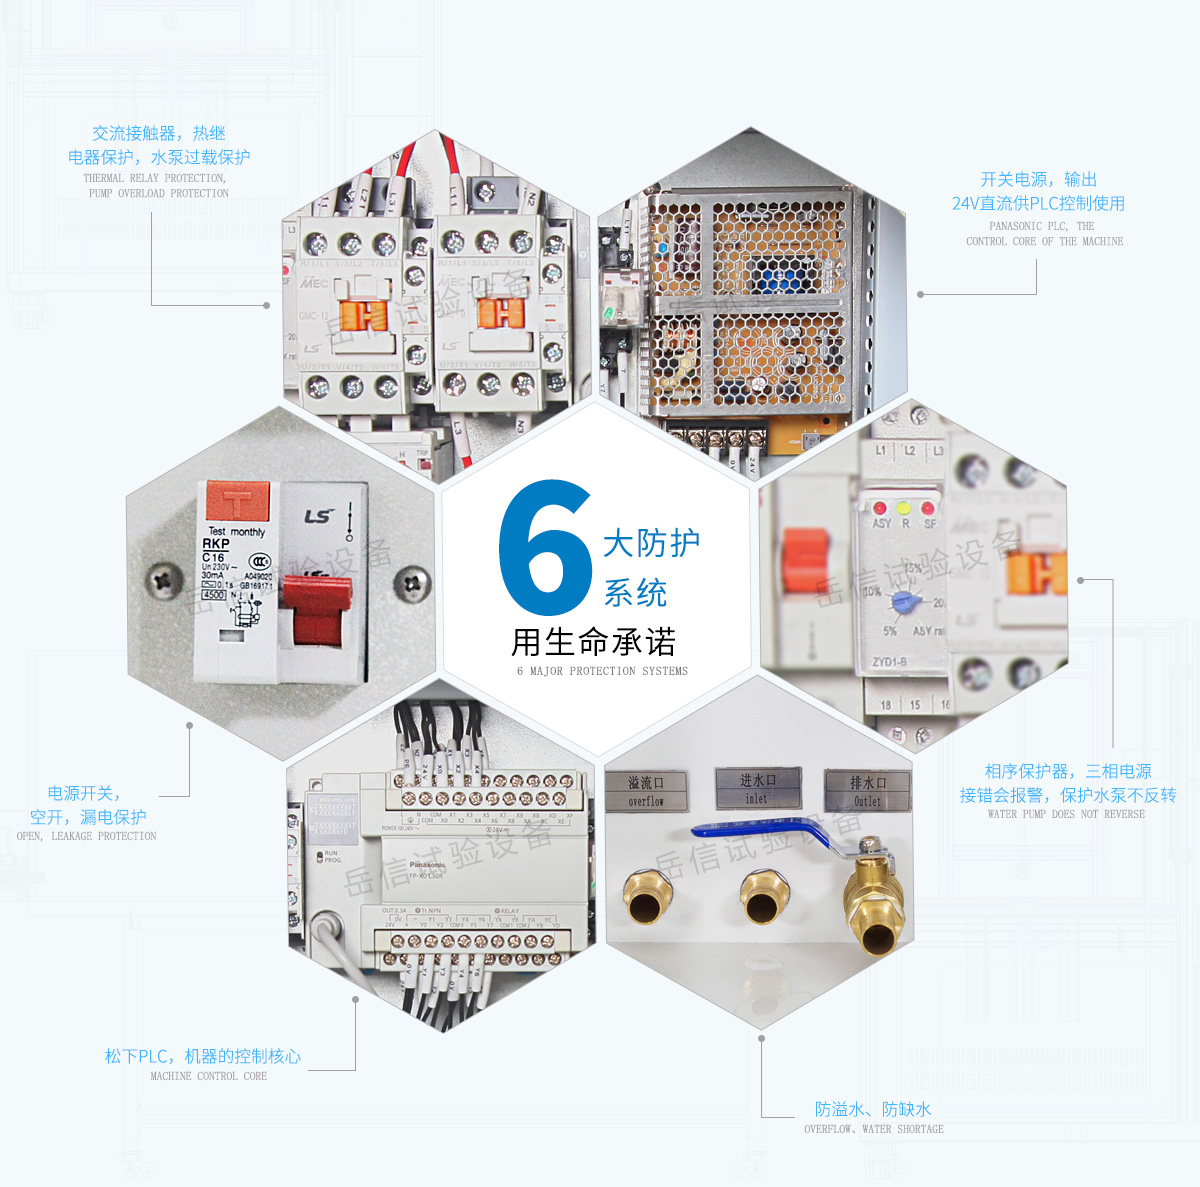 6大防护系统：热继电器，开关电源，防漏电保护，相序保护器，防溢水等